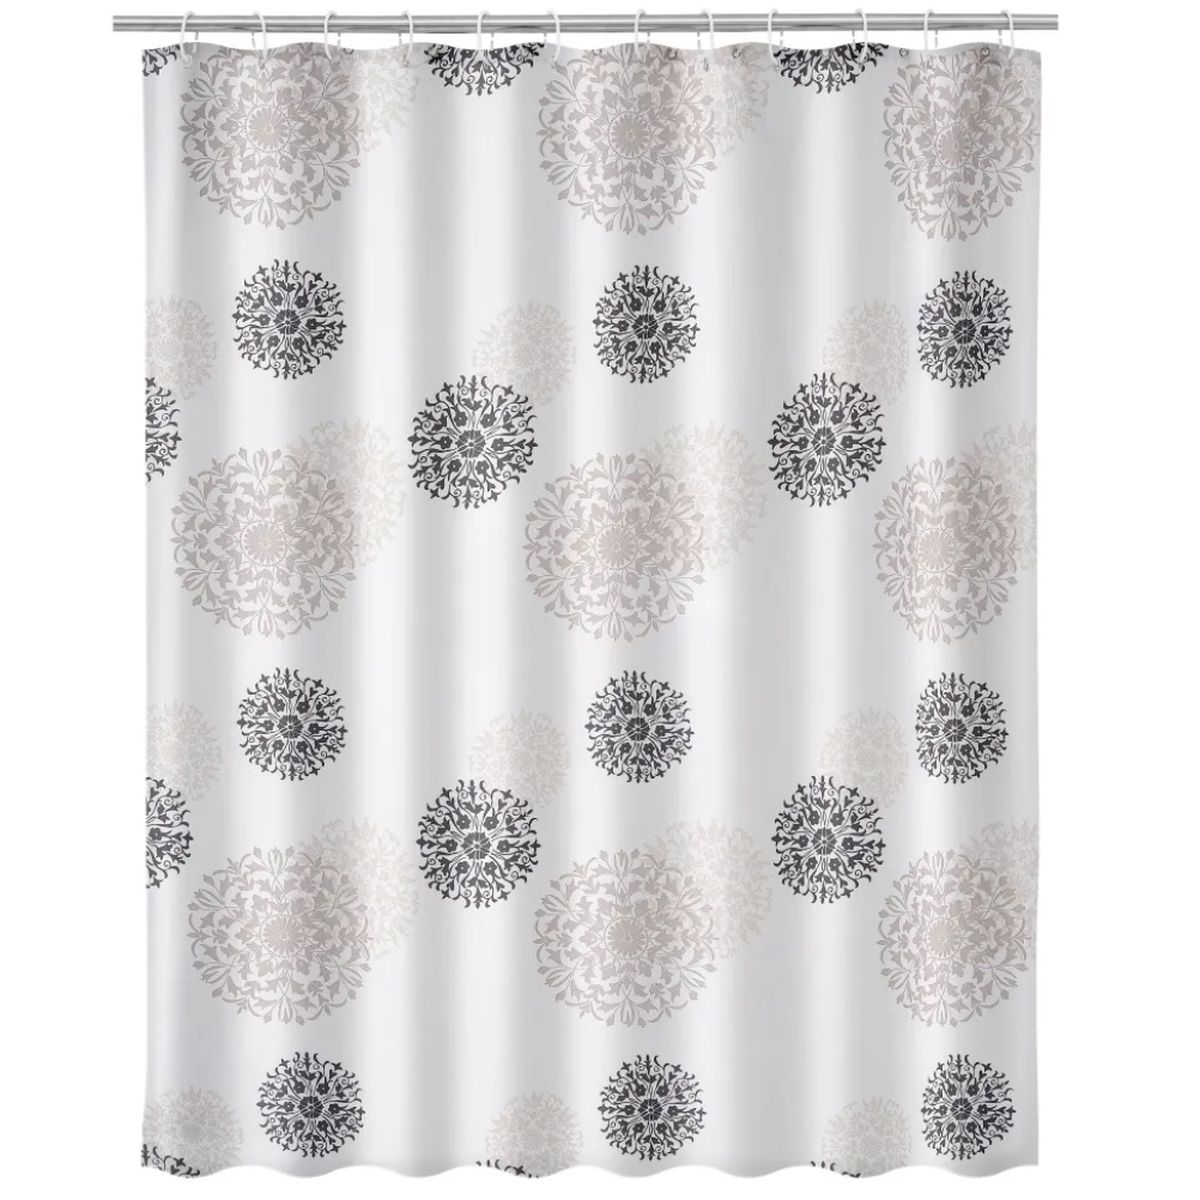 AIR shower curtain 180 x 200 cm